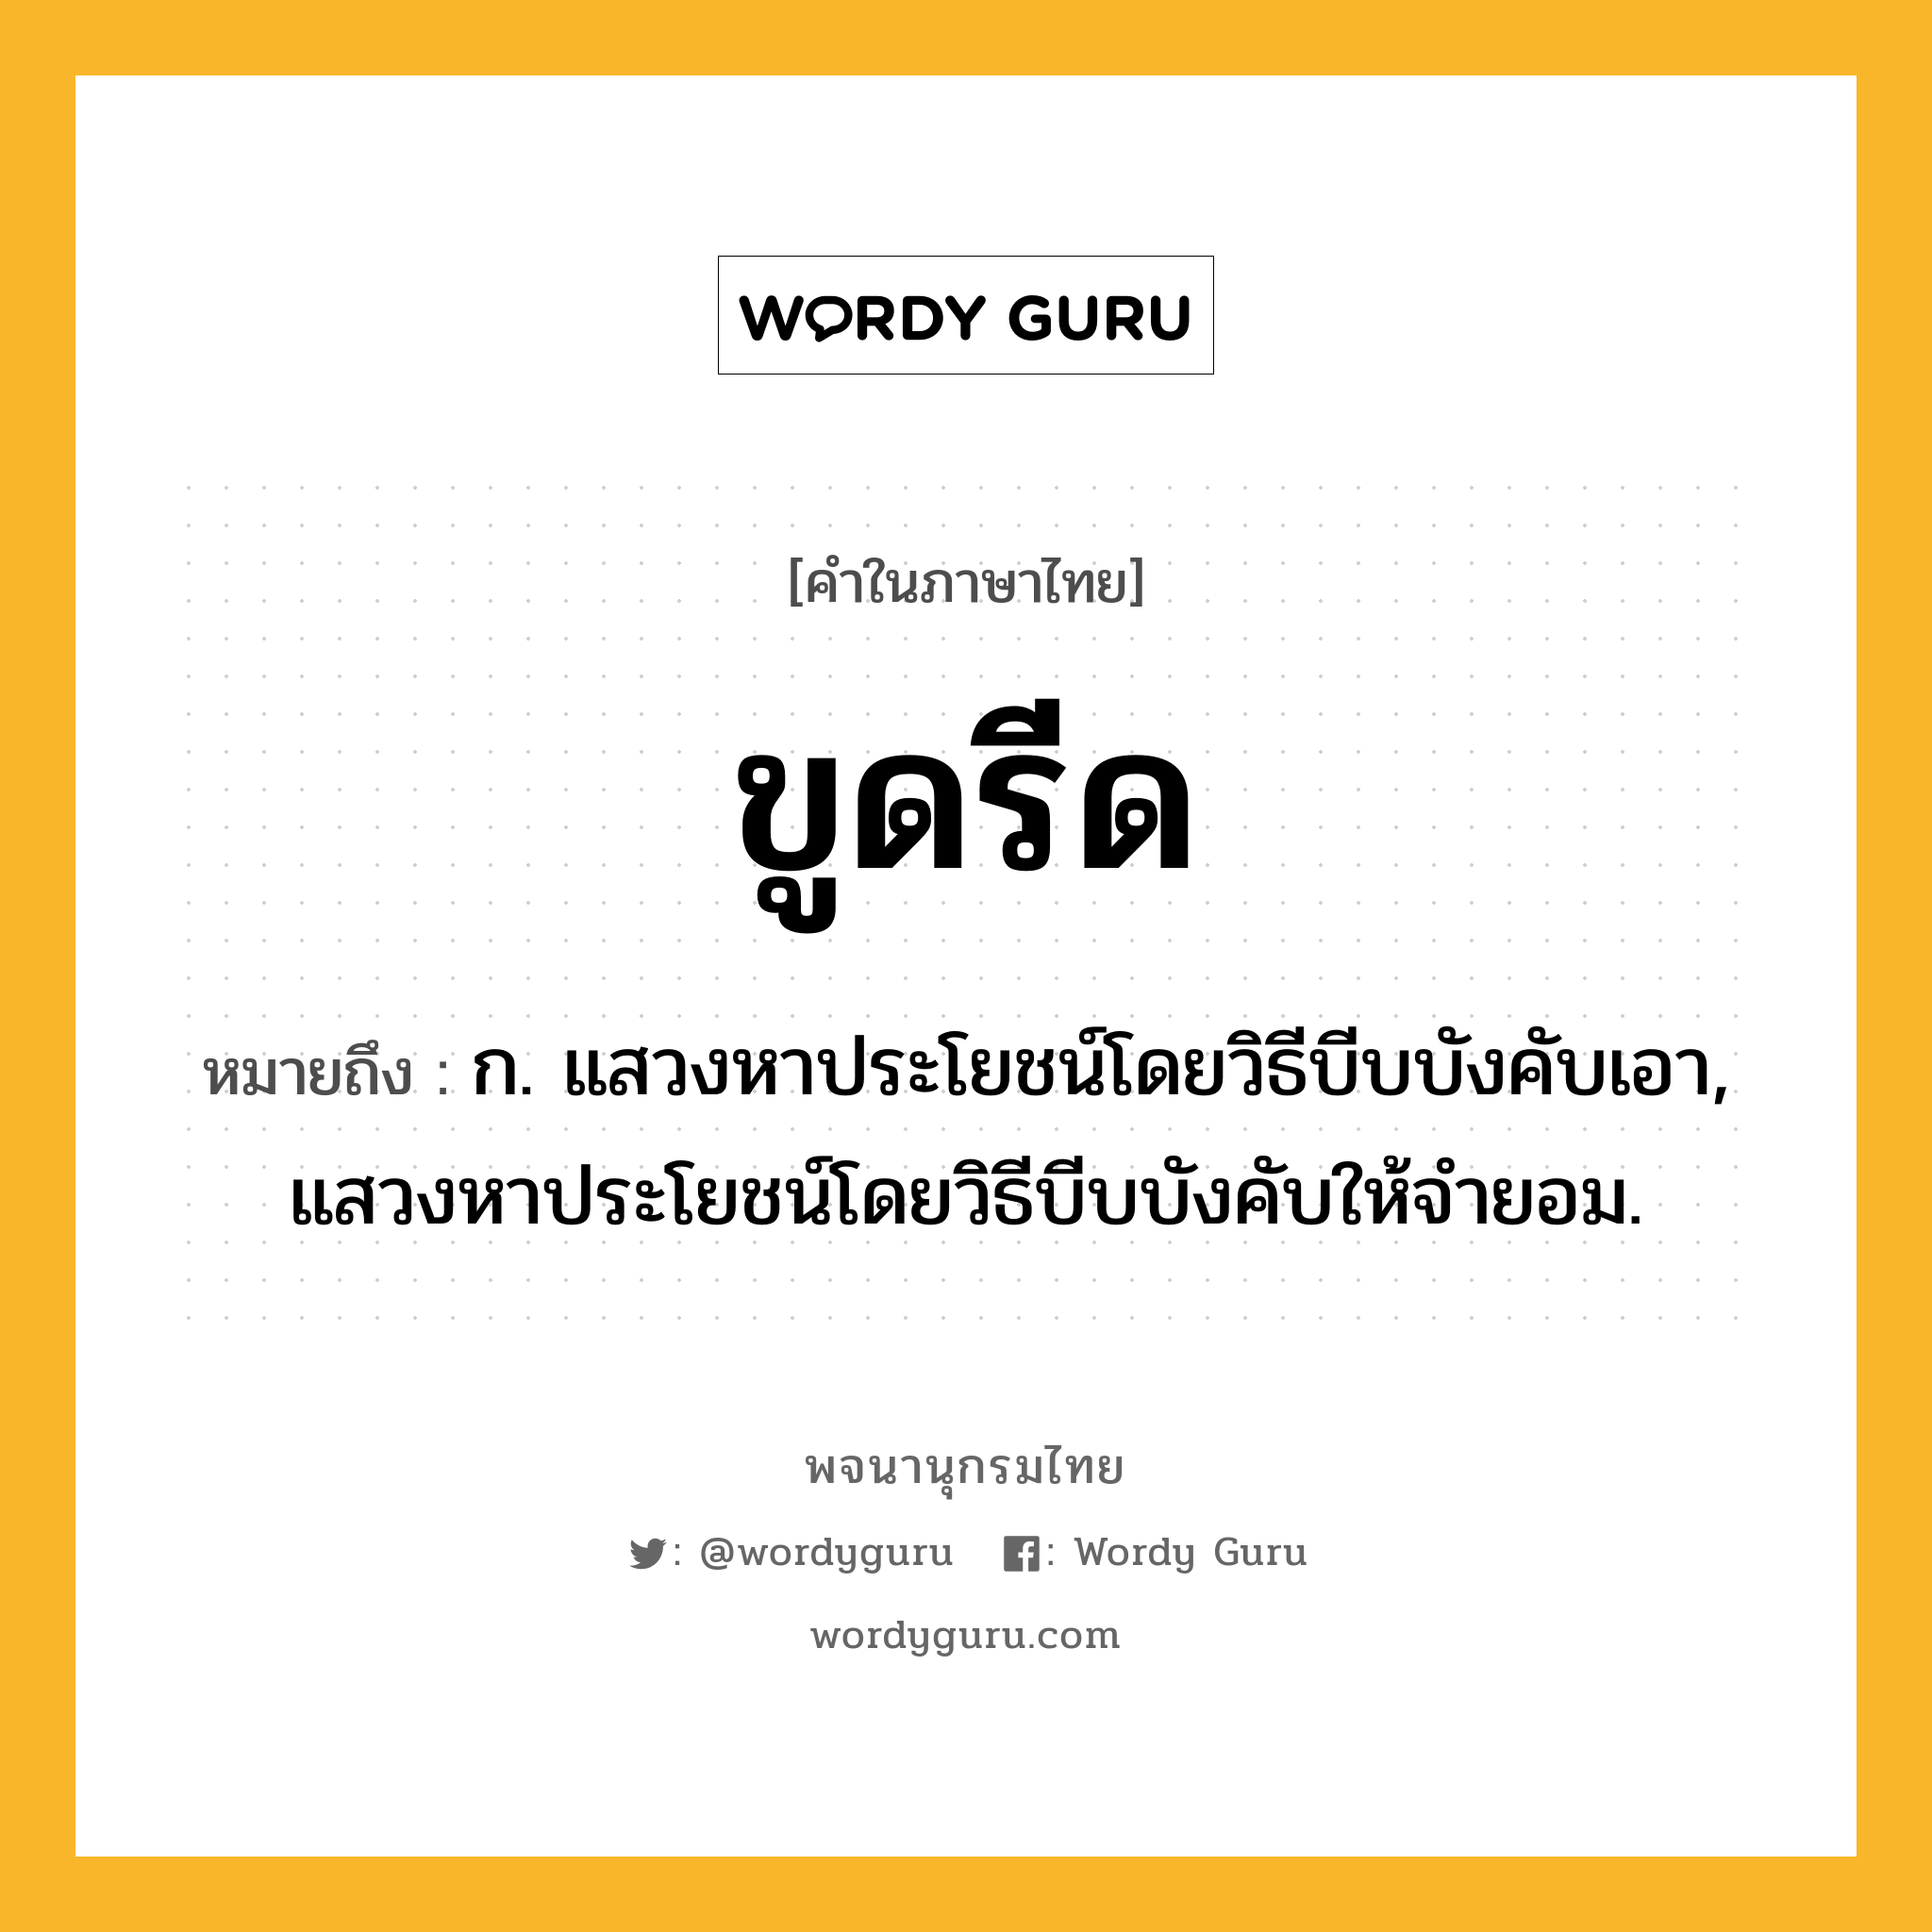 ขูดรีด หมายถึงอะไร?, คำในภาษาไทย ขูดรีด หมายถึง ก. แสวงหาประโยชน์โดยวิธีบีบบังคับเอา, แสวงหาประโยชน์โดยวิธีบีบบังคับให้จํายอม.